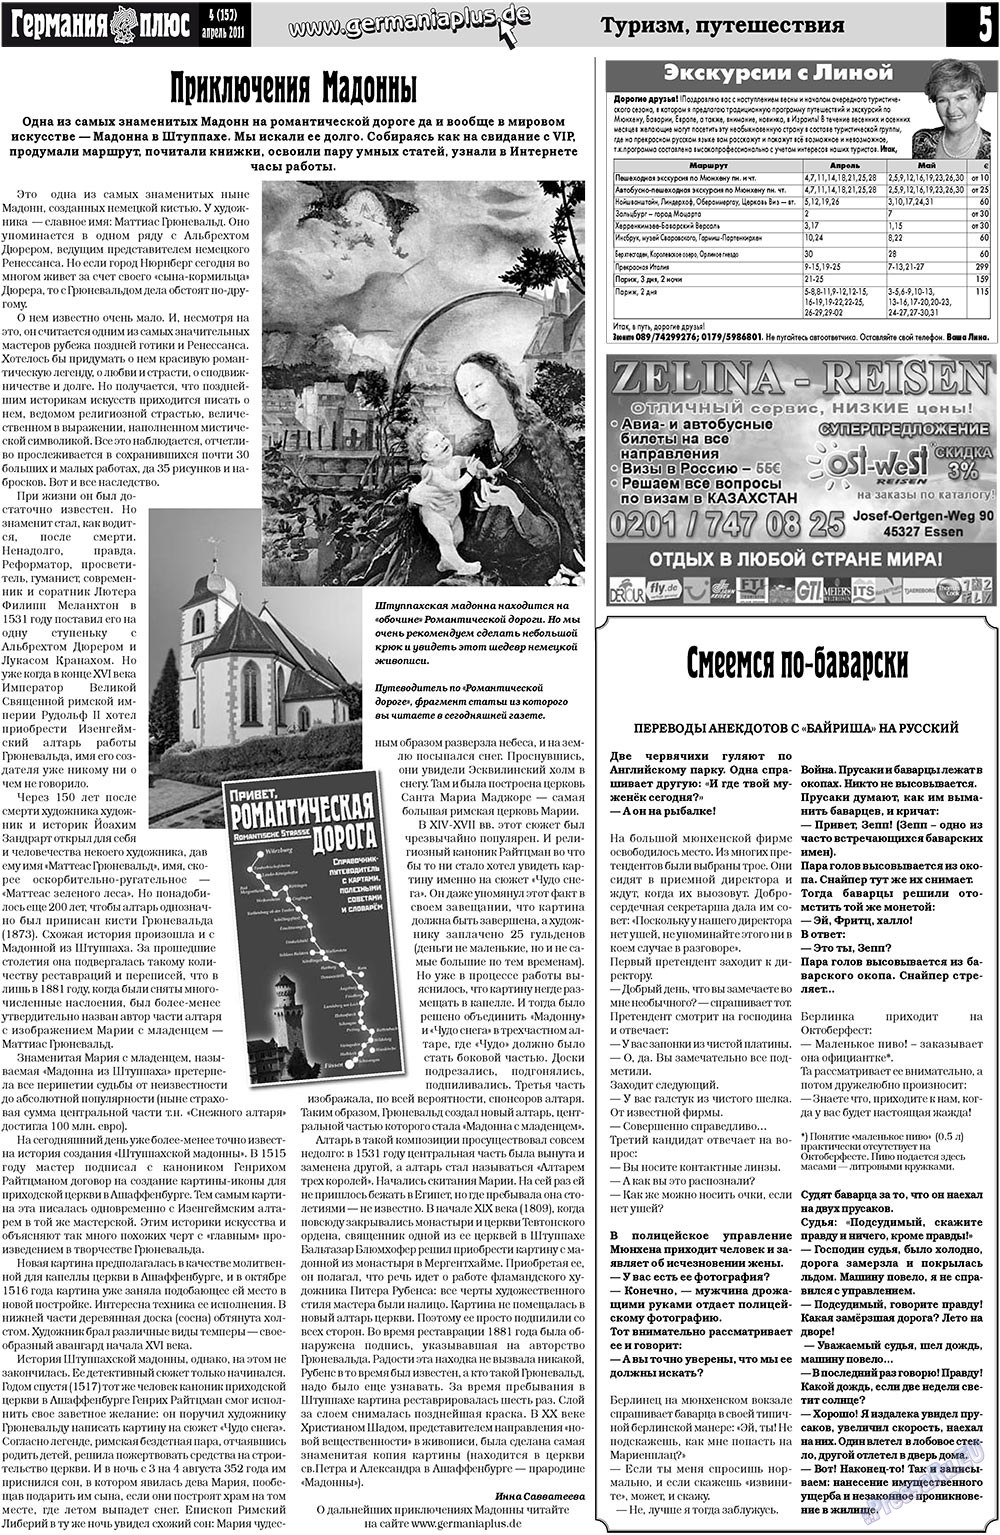 Германия плюс, газета. 2011 №4 стр.5